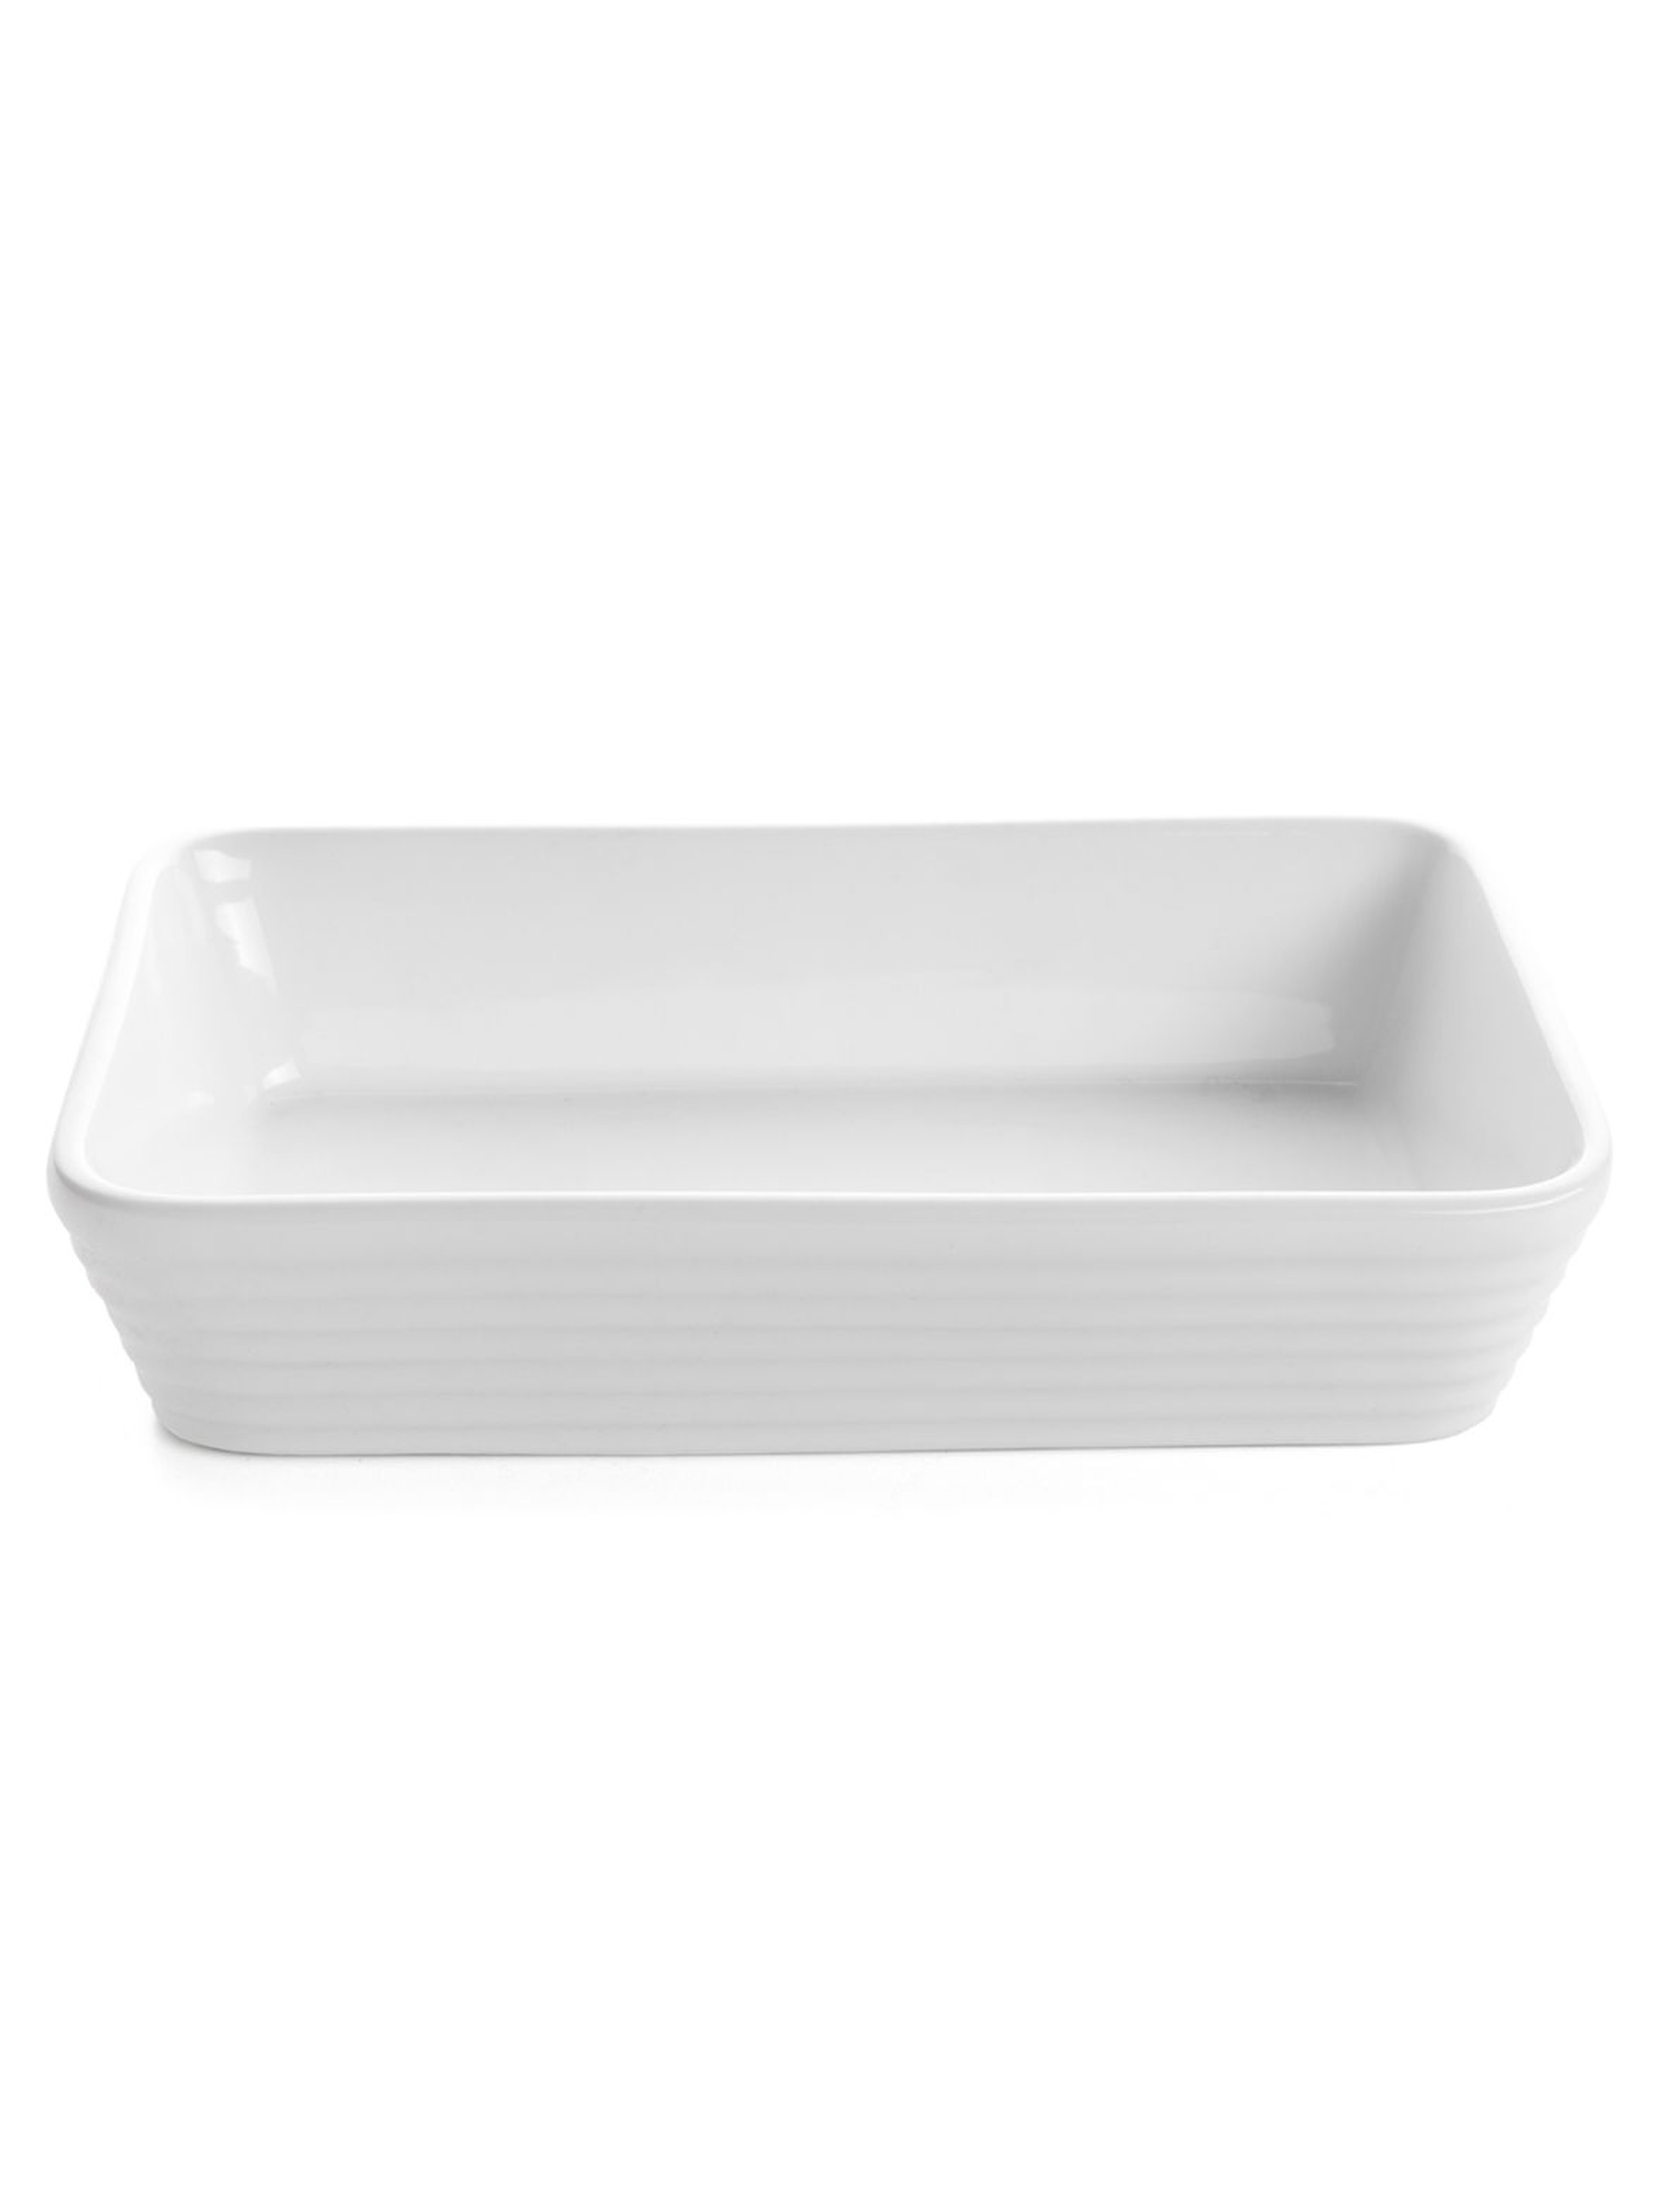 Naczynie ceramiczne Christo prostokątne białe 34x23cm 2,8l